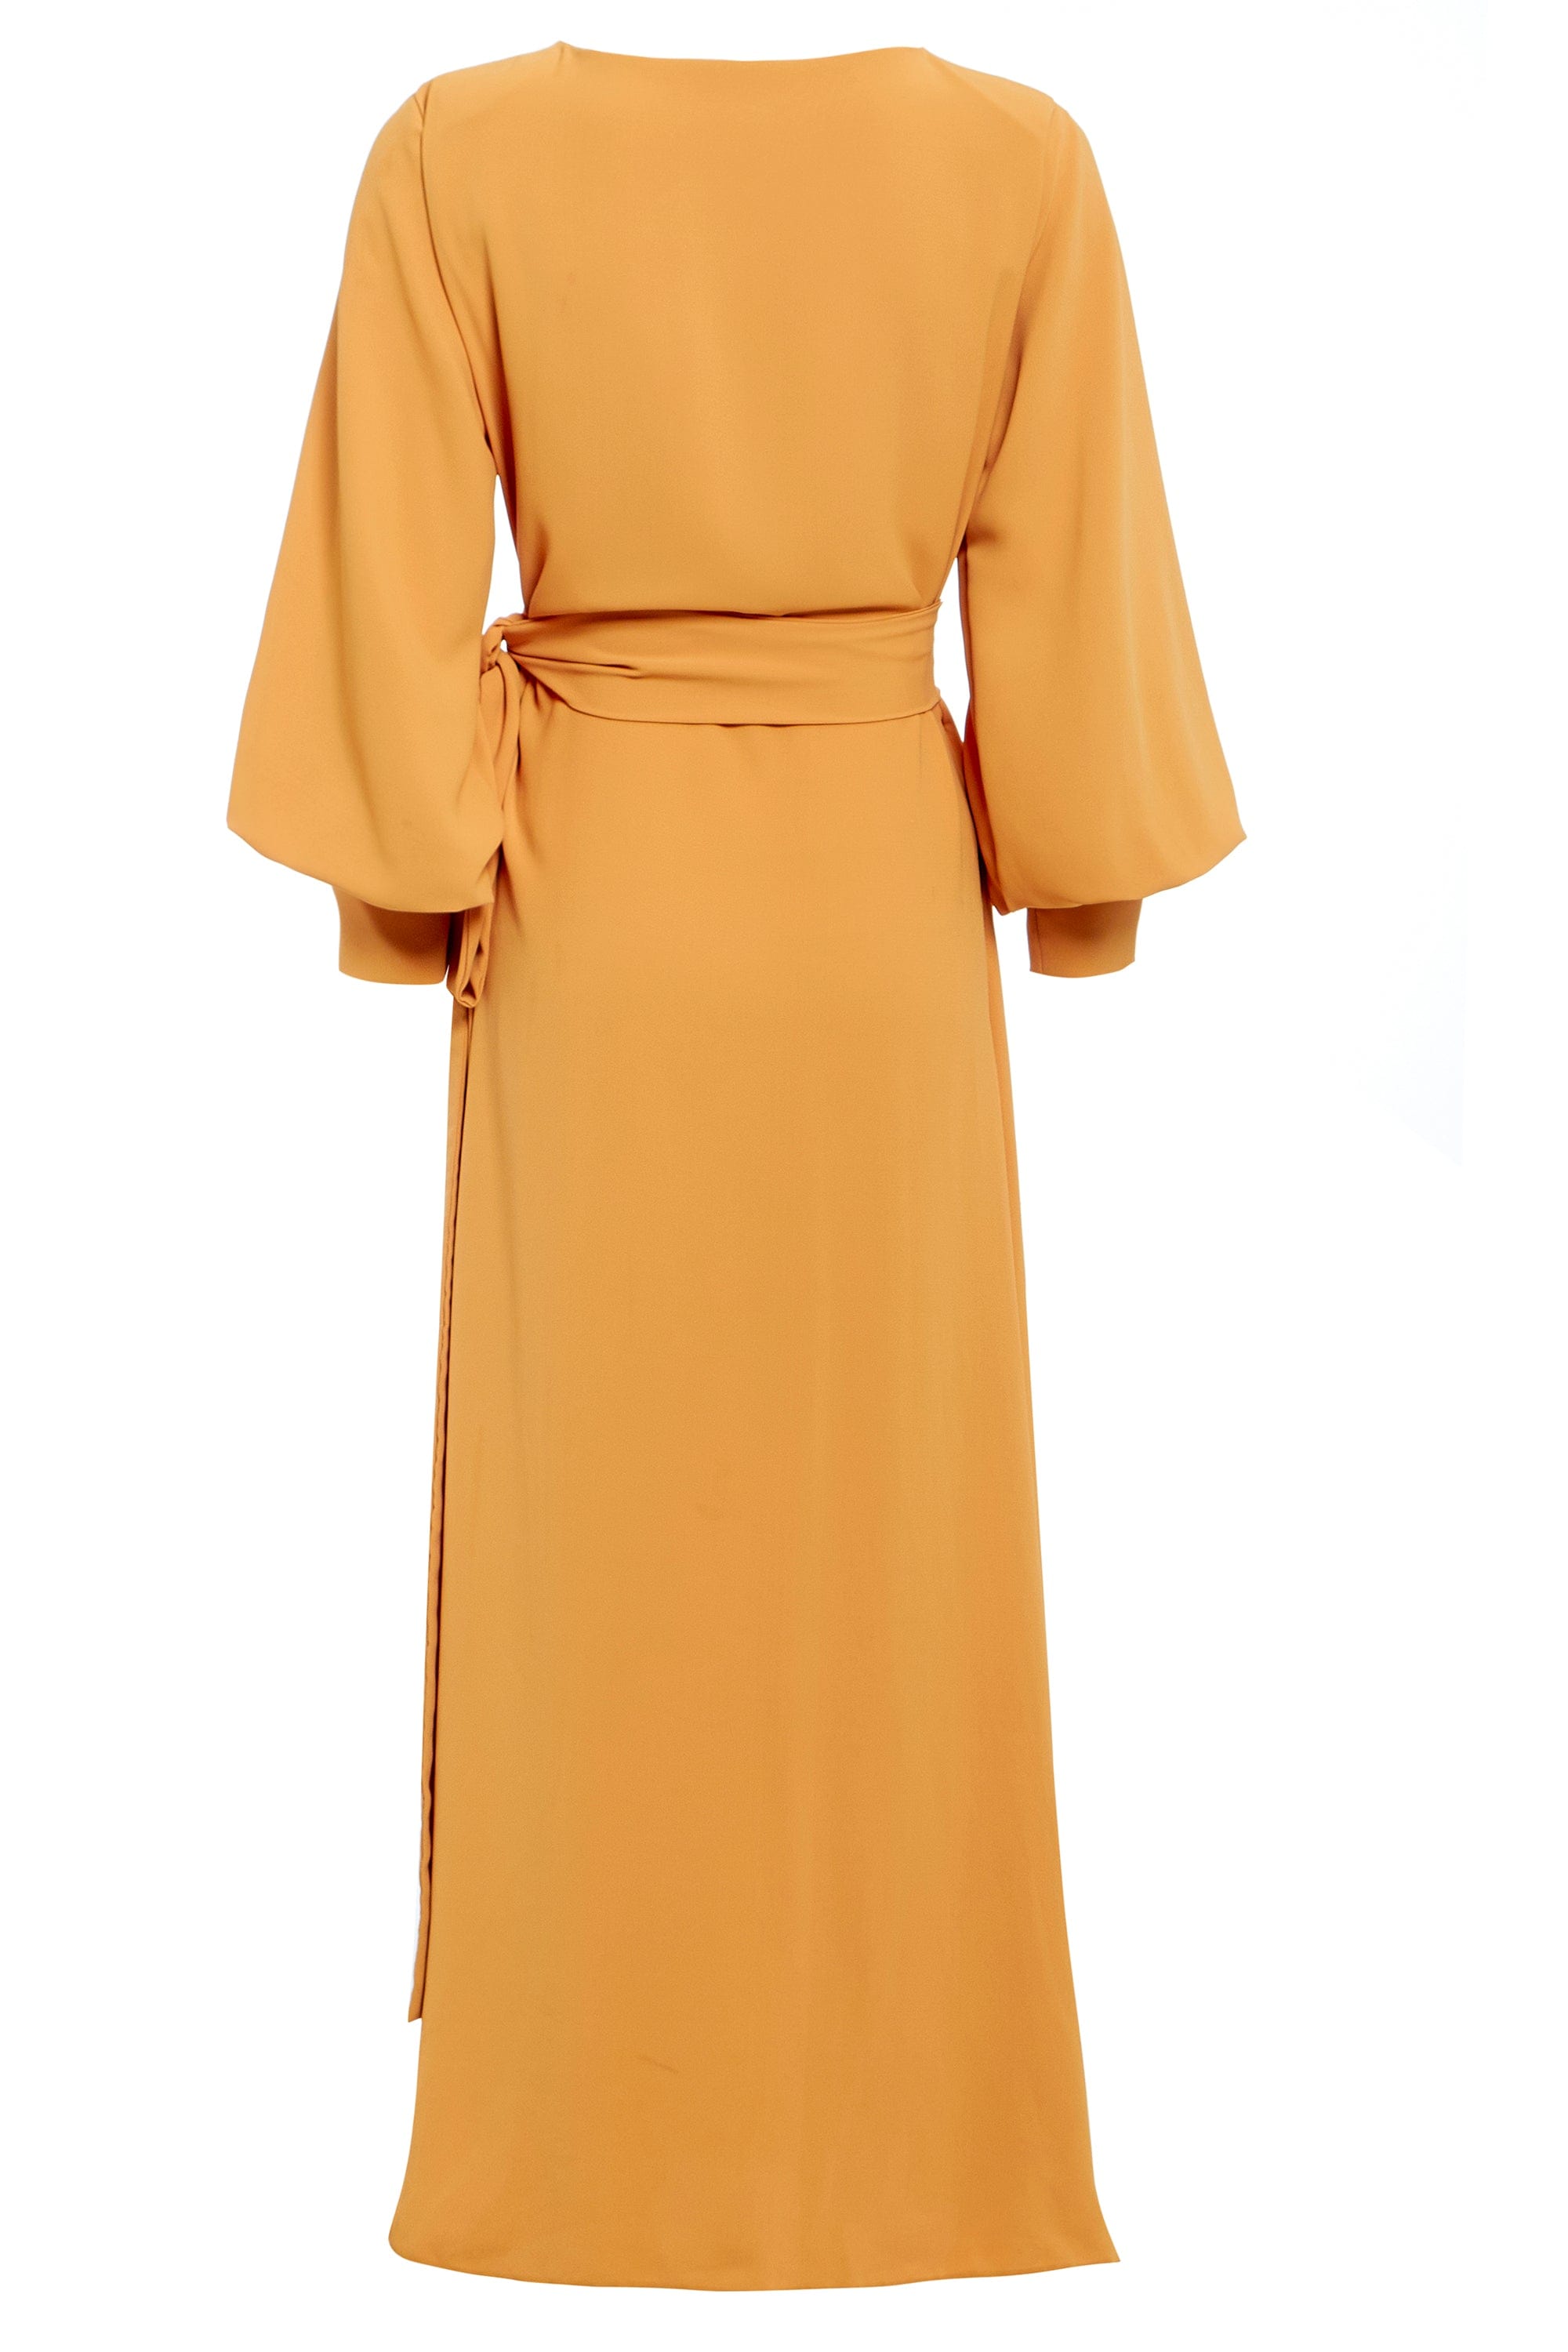 Mustard Wrap Dress - SARVIN-1267